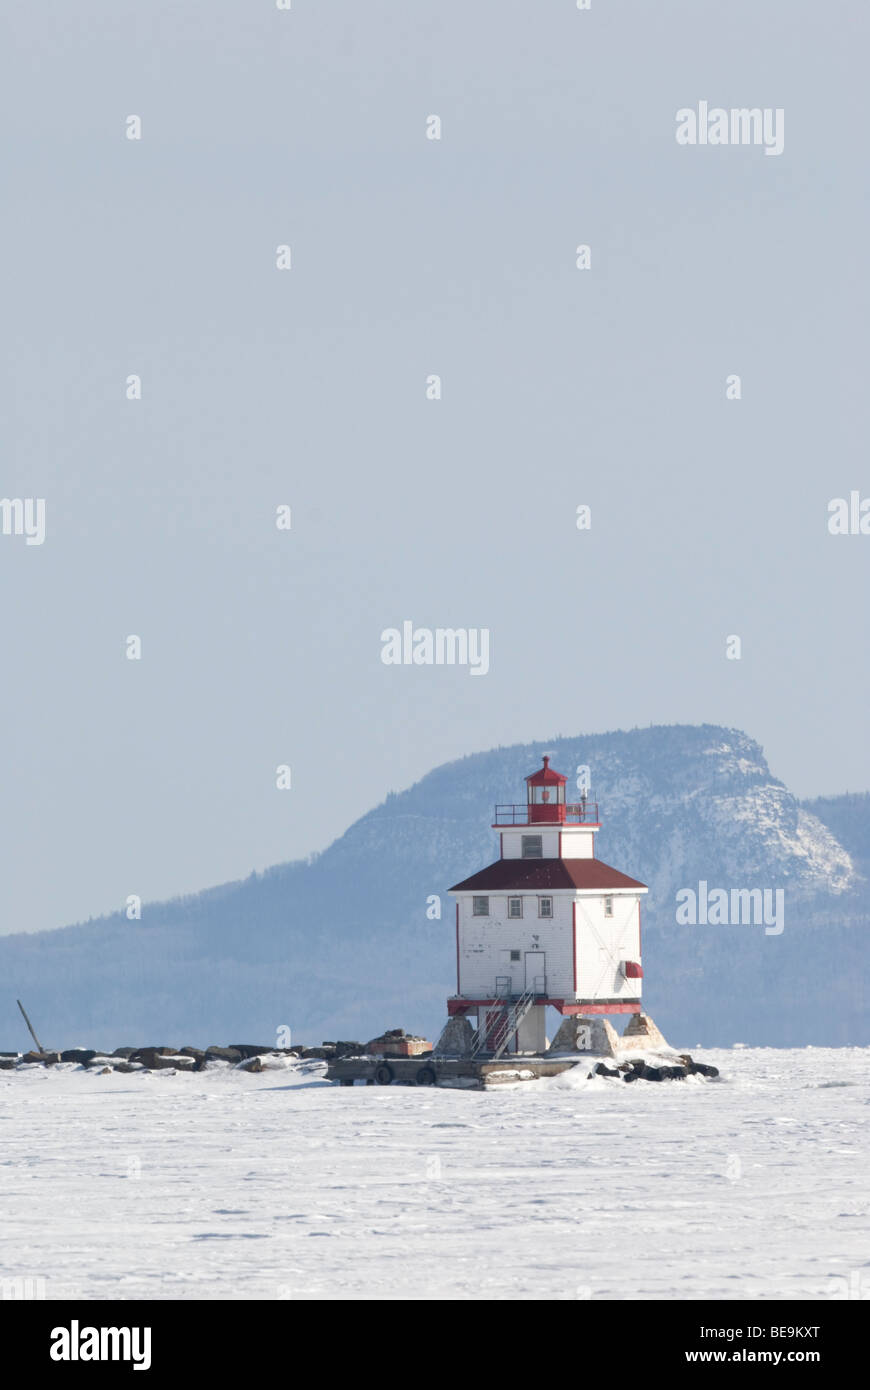 Het bevroren meer met deen vuurtoren,The frozen lake wit a lighthouse Stock Photo